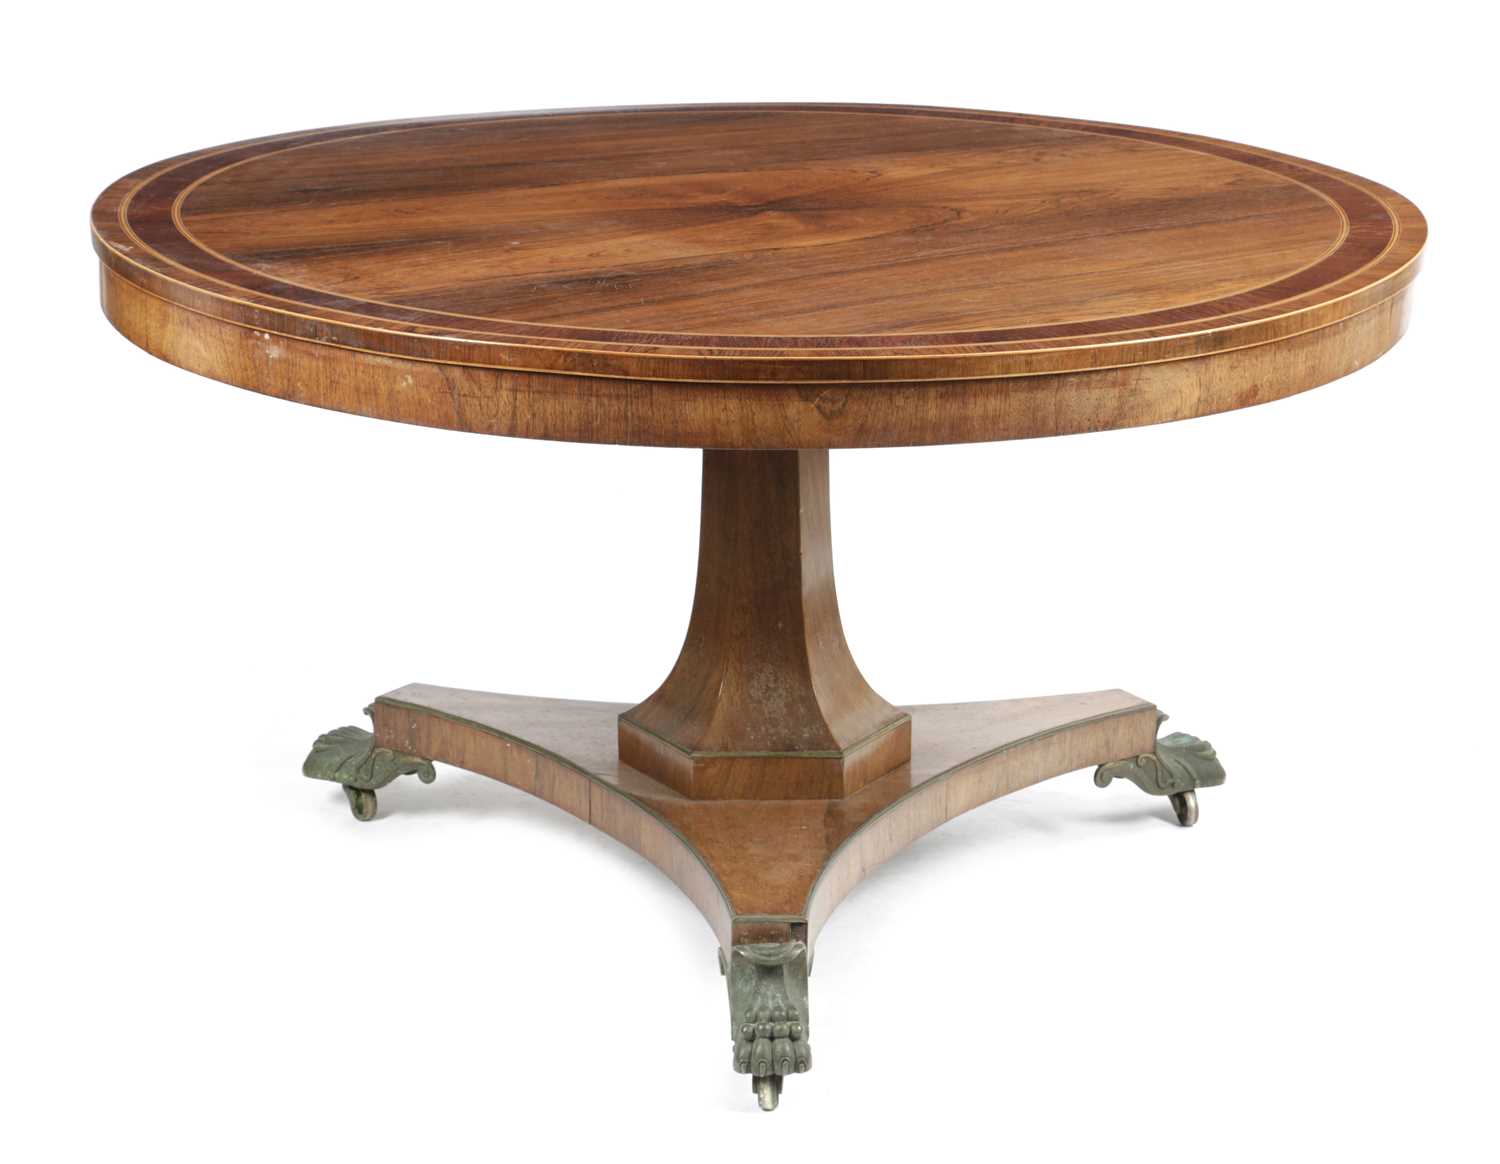 λ A REGENCY ROSEWOOD CENTRE TABLE EARLY 19TH CENTURY the circular tilt-top with partridge wood